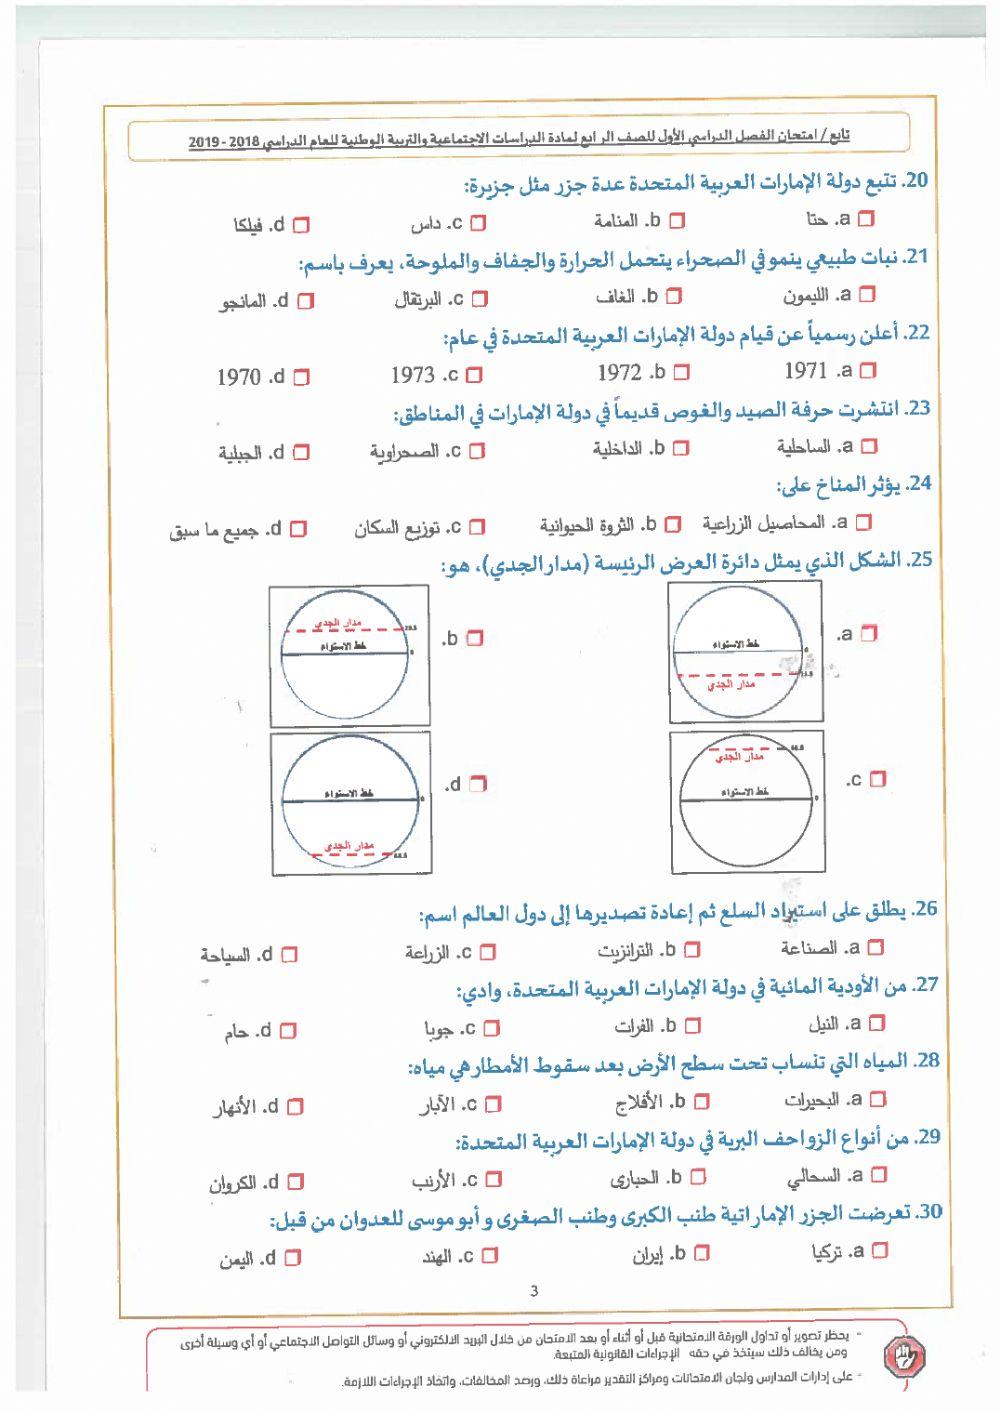 مذكرة ( 2 ) للمعلمة شيخة سيف الظاهري مدرسة الغيث